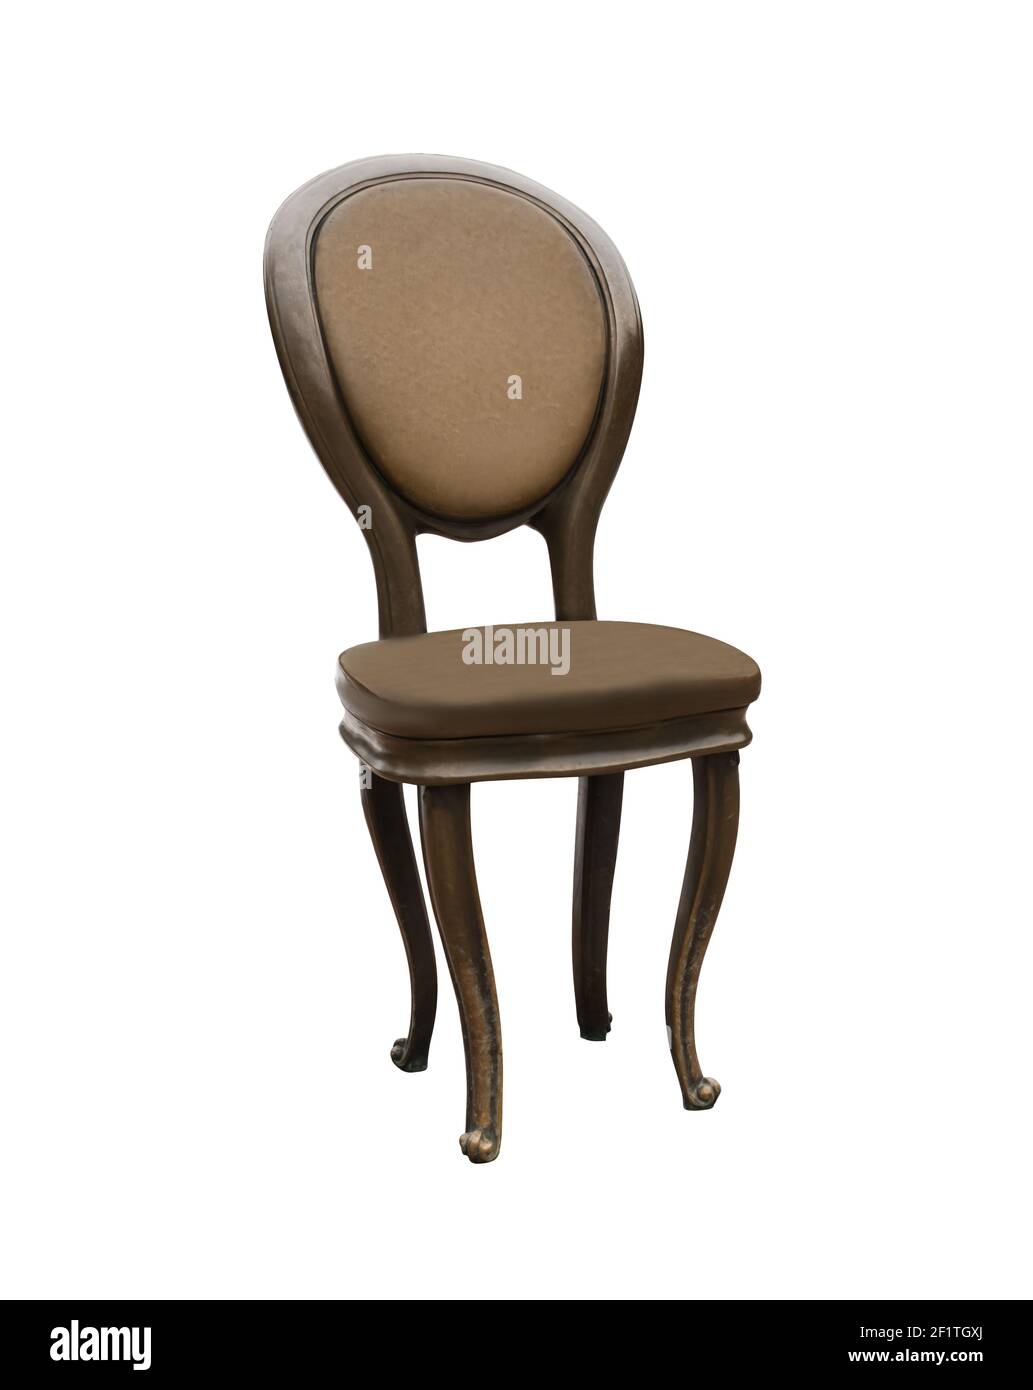 illustration, chaise vintage sur fond blanc isolé Banque D'Images